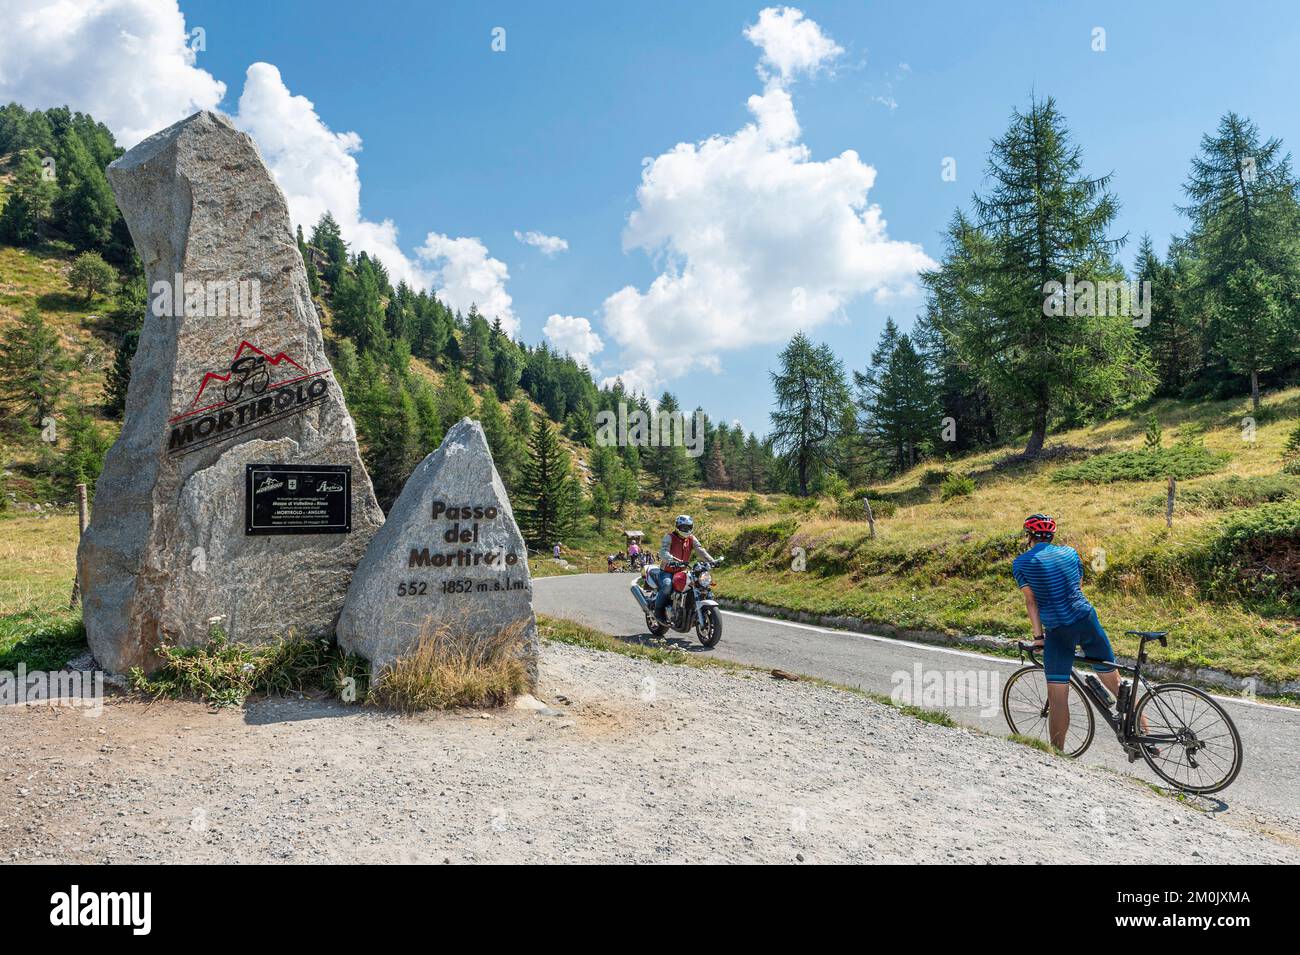 monument au cycliste au col de mortirolo, col de mortirolo, italie Banque D'Images